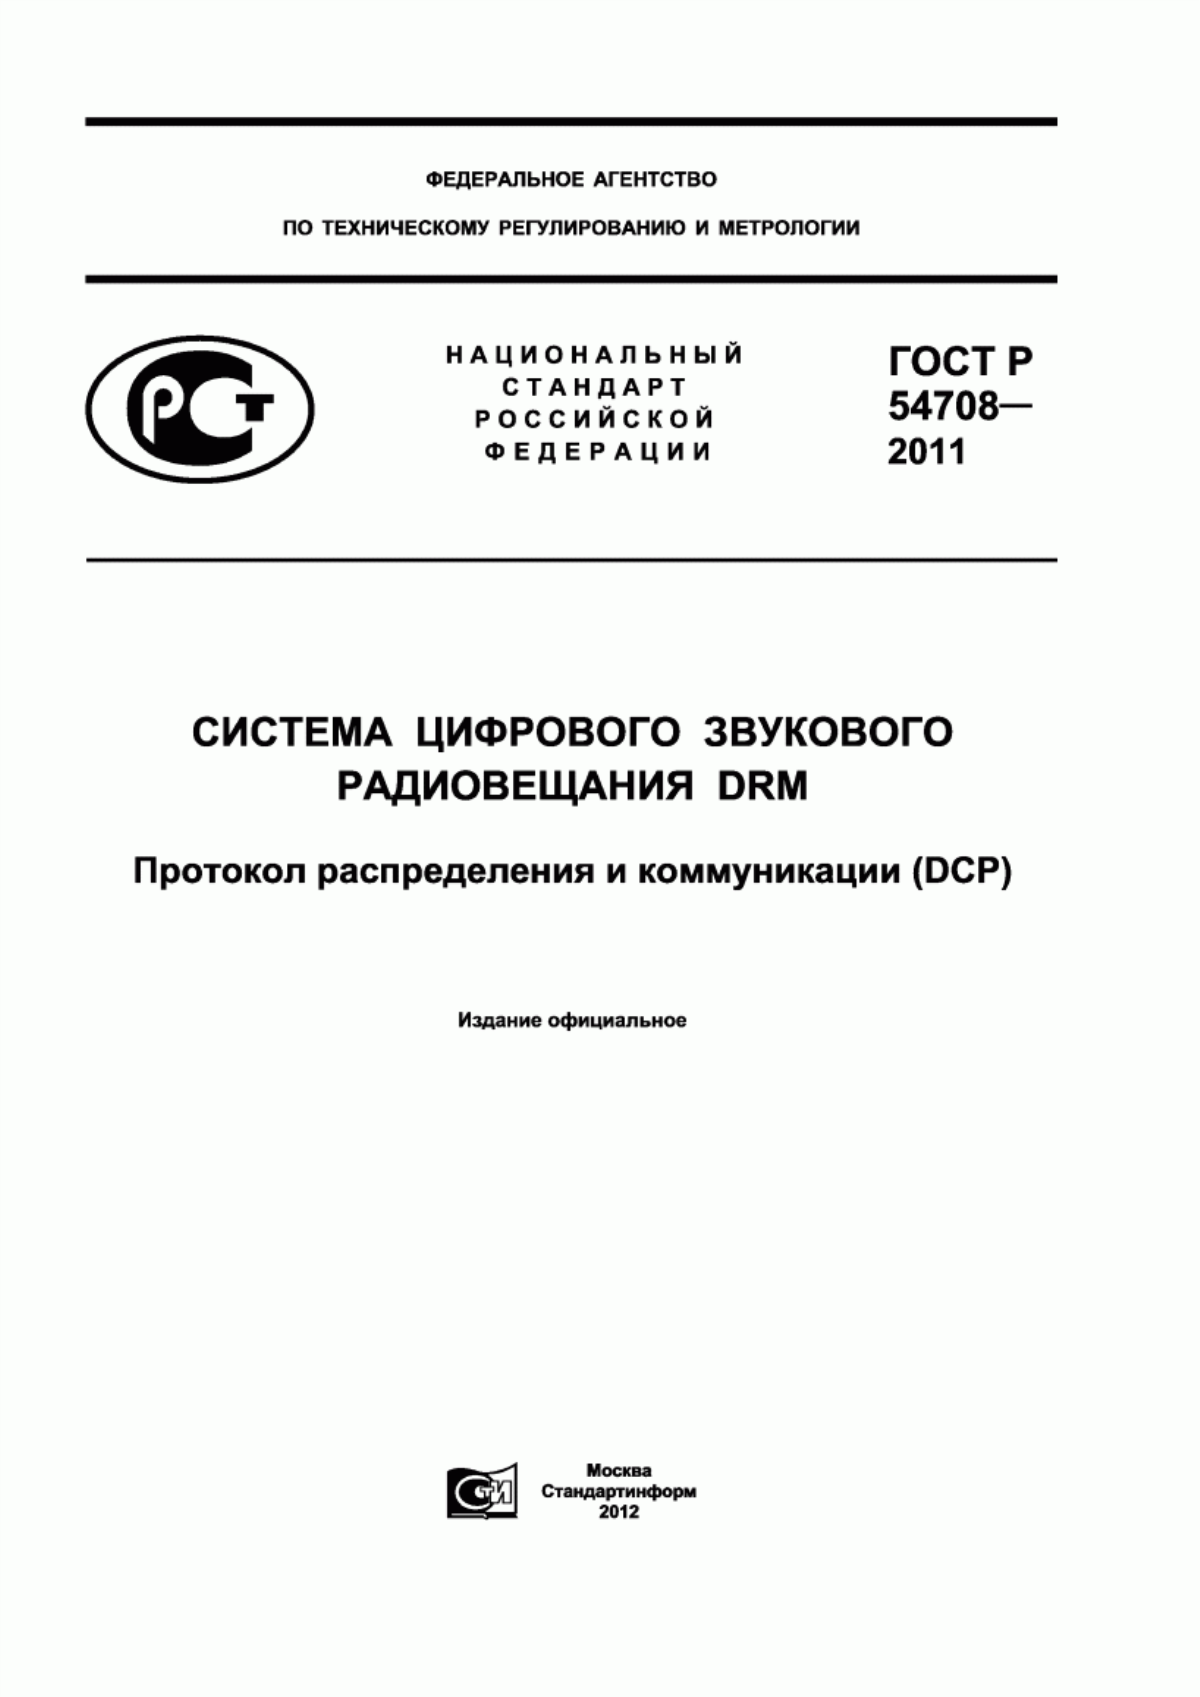 ГОСТ Р 54708-2011 Система цифрового звукового радиовещания DRM. Протокол распределения и коммуникации (DCP)